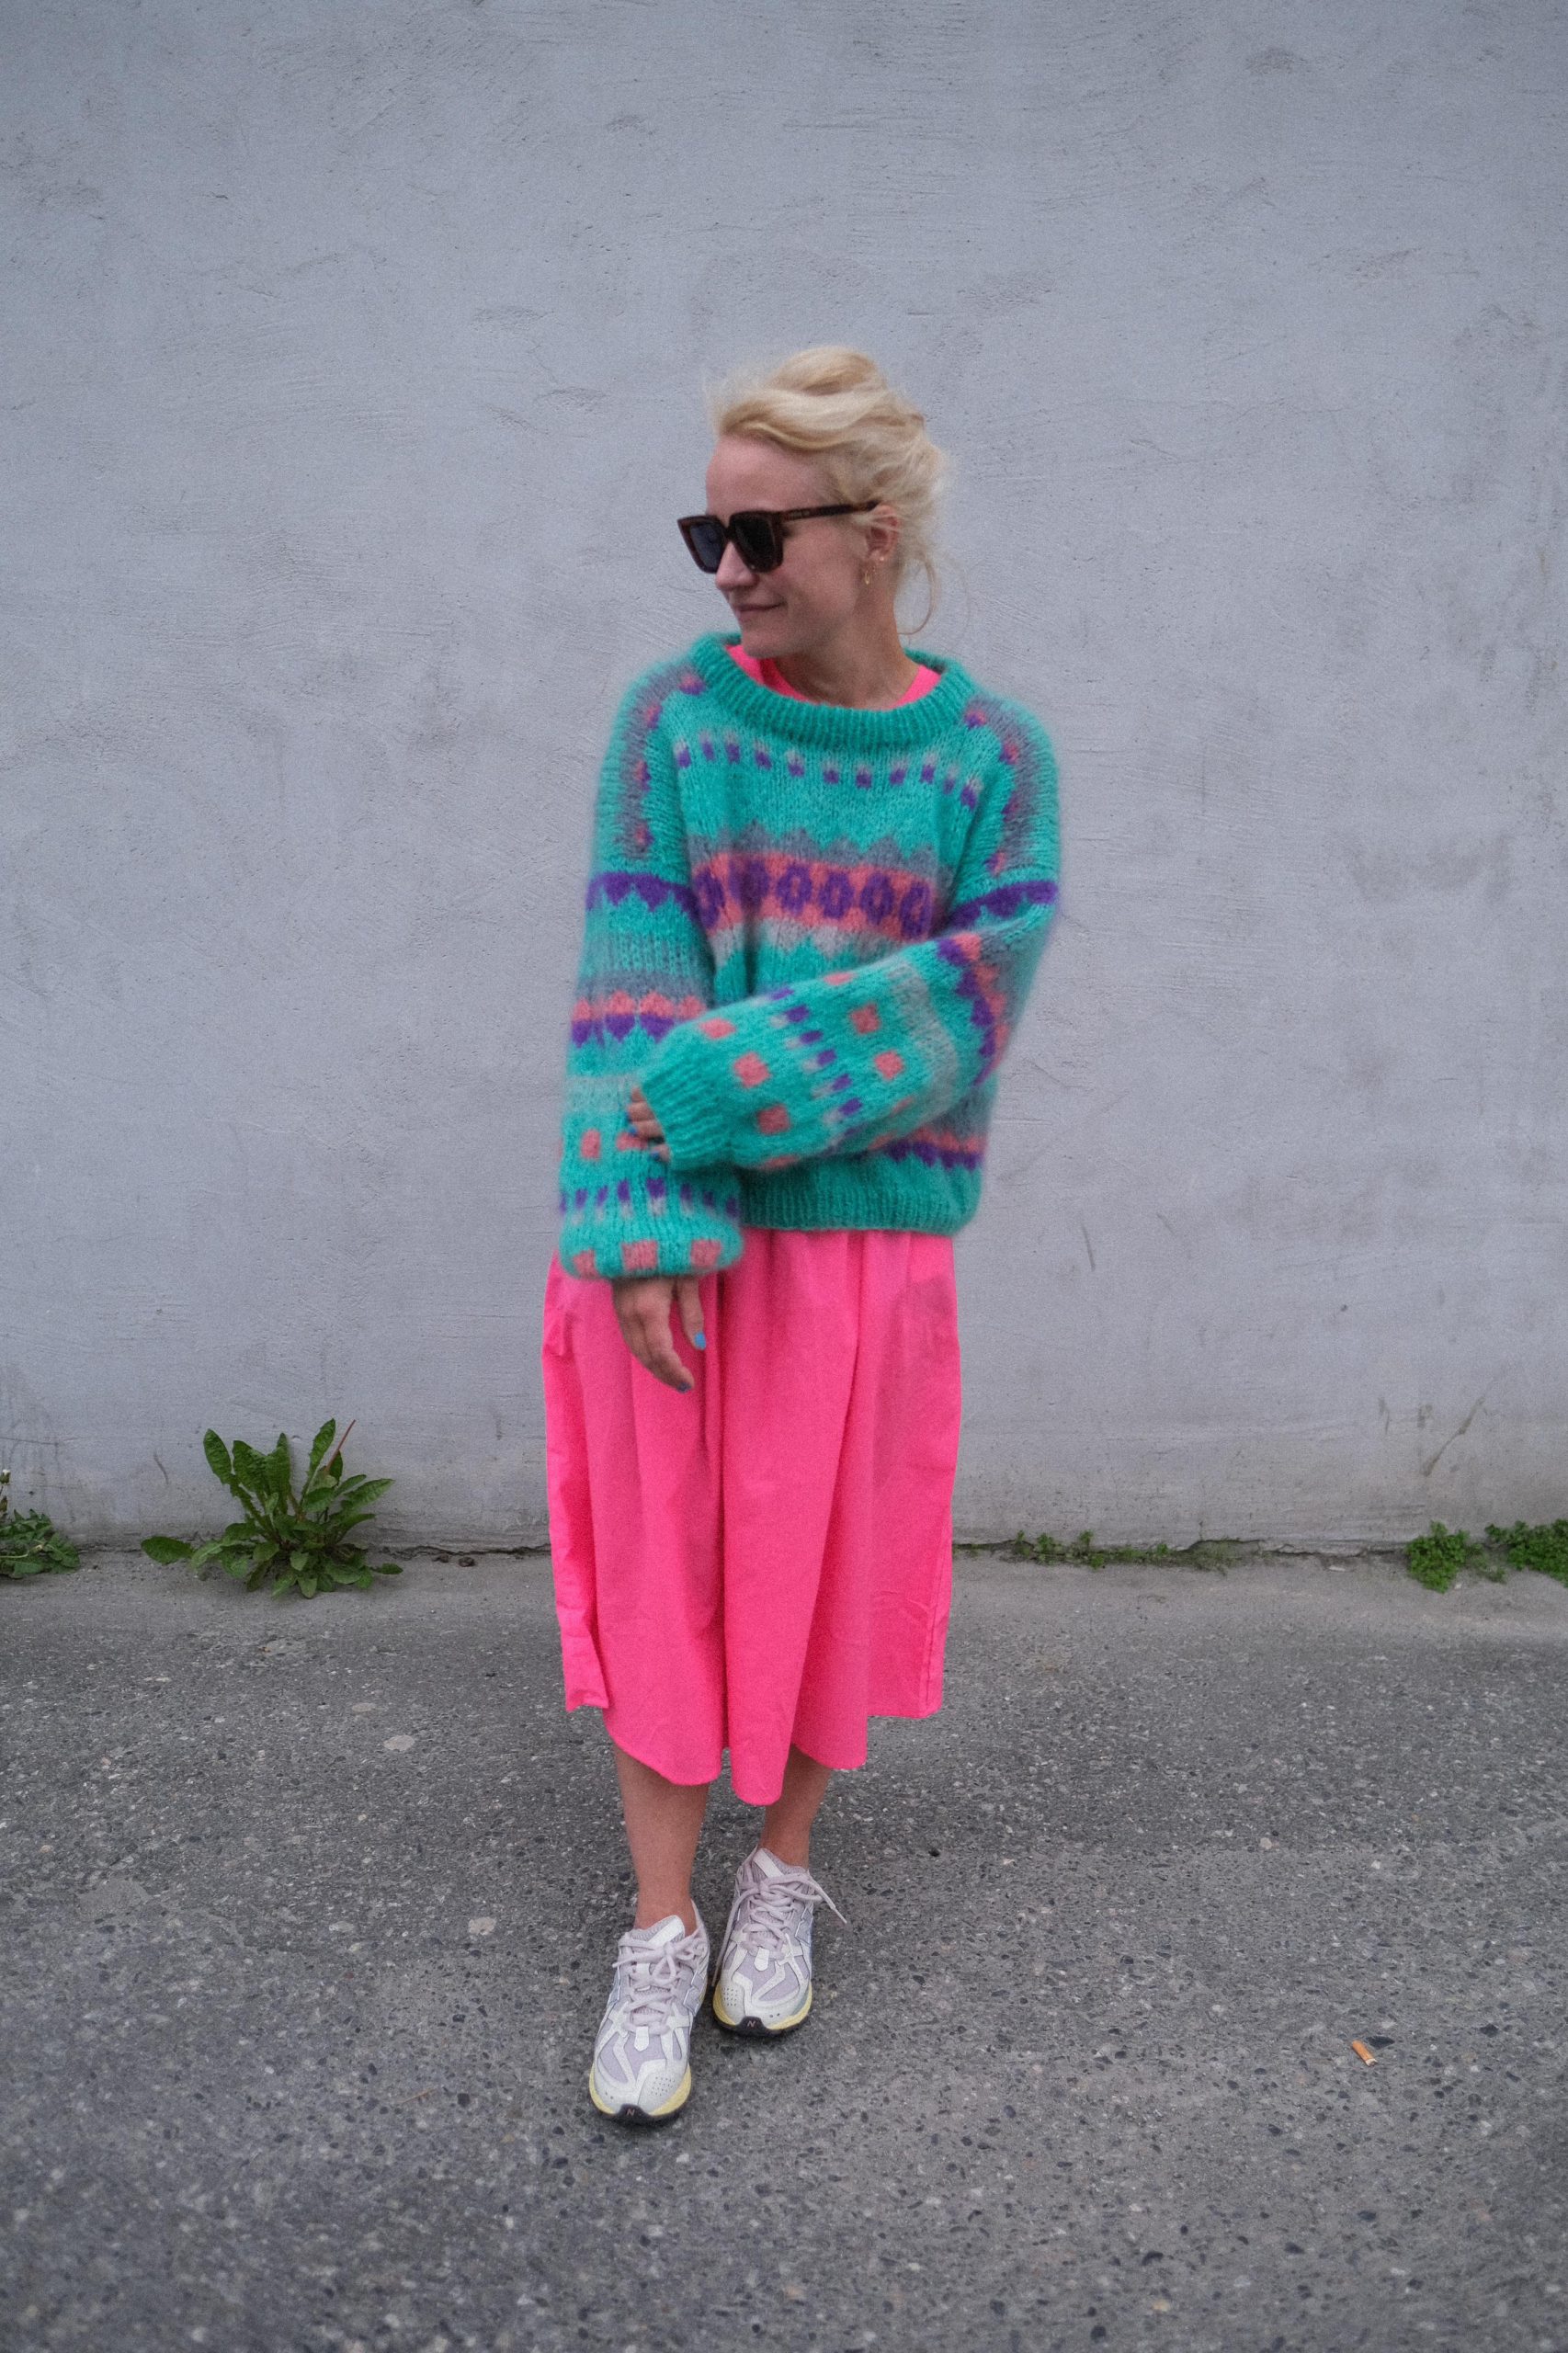 mohair sweater 80s inspired knitting pattern women funkytown